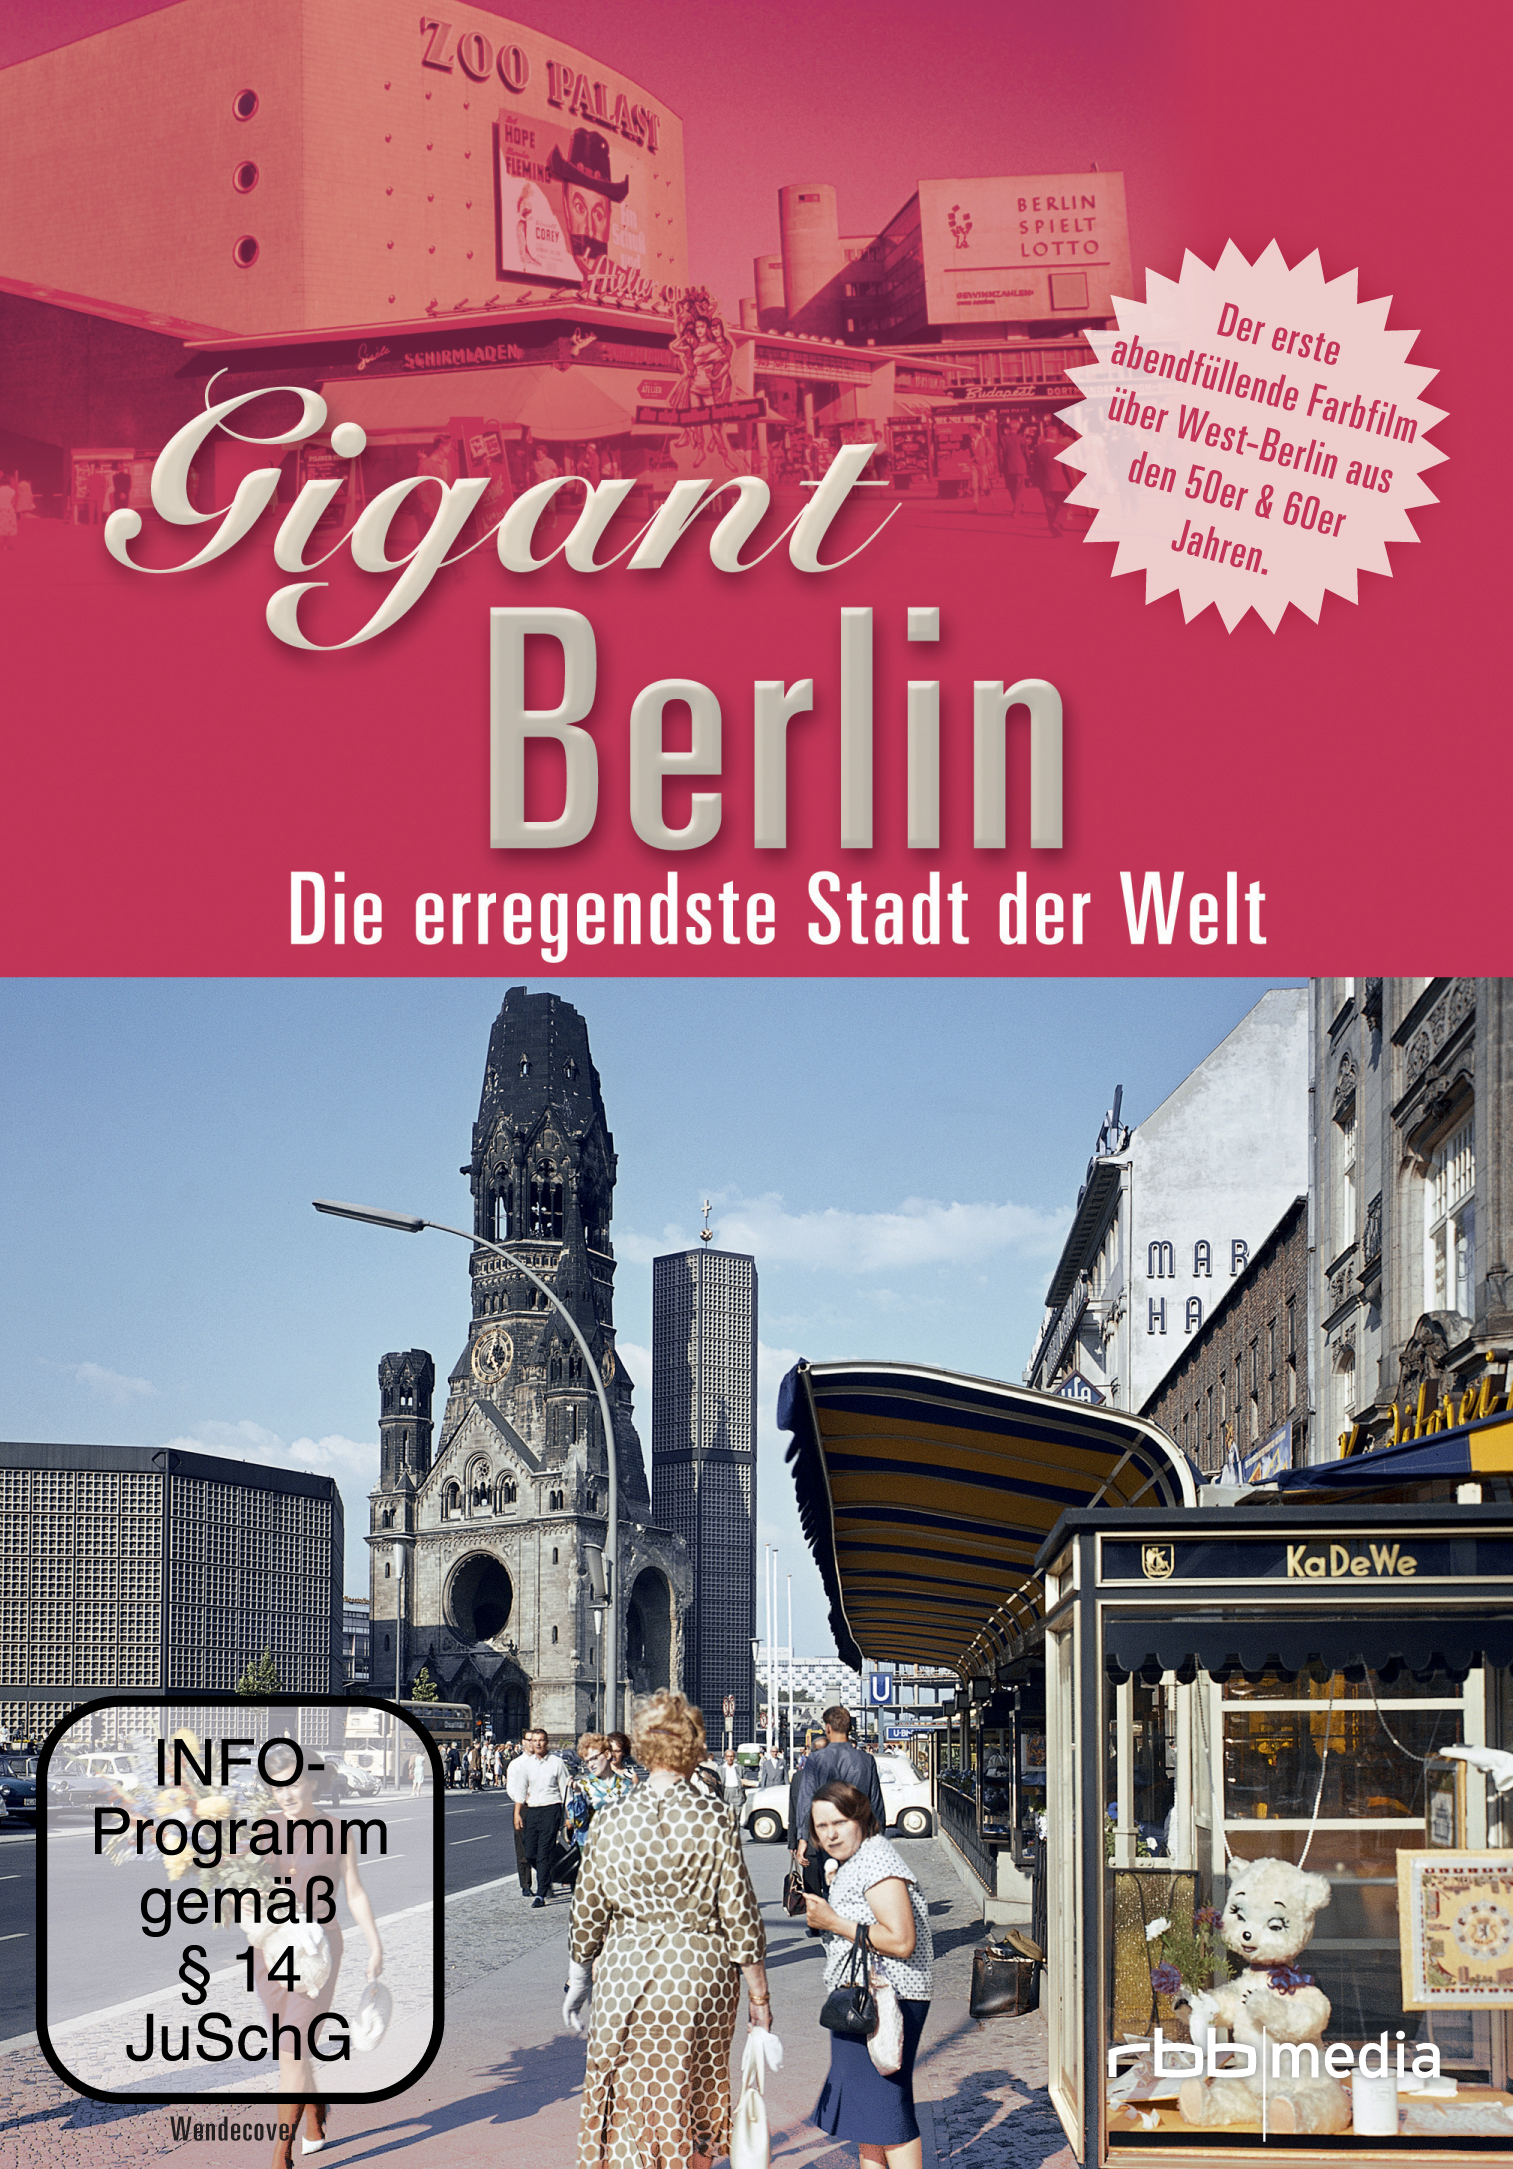 Gigant Berlin - Stadt Die erregendeste der DVD Welt